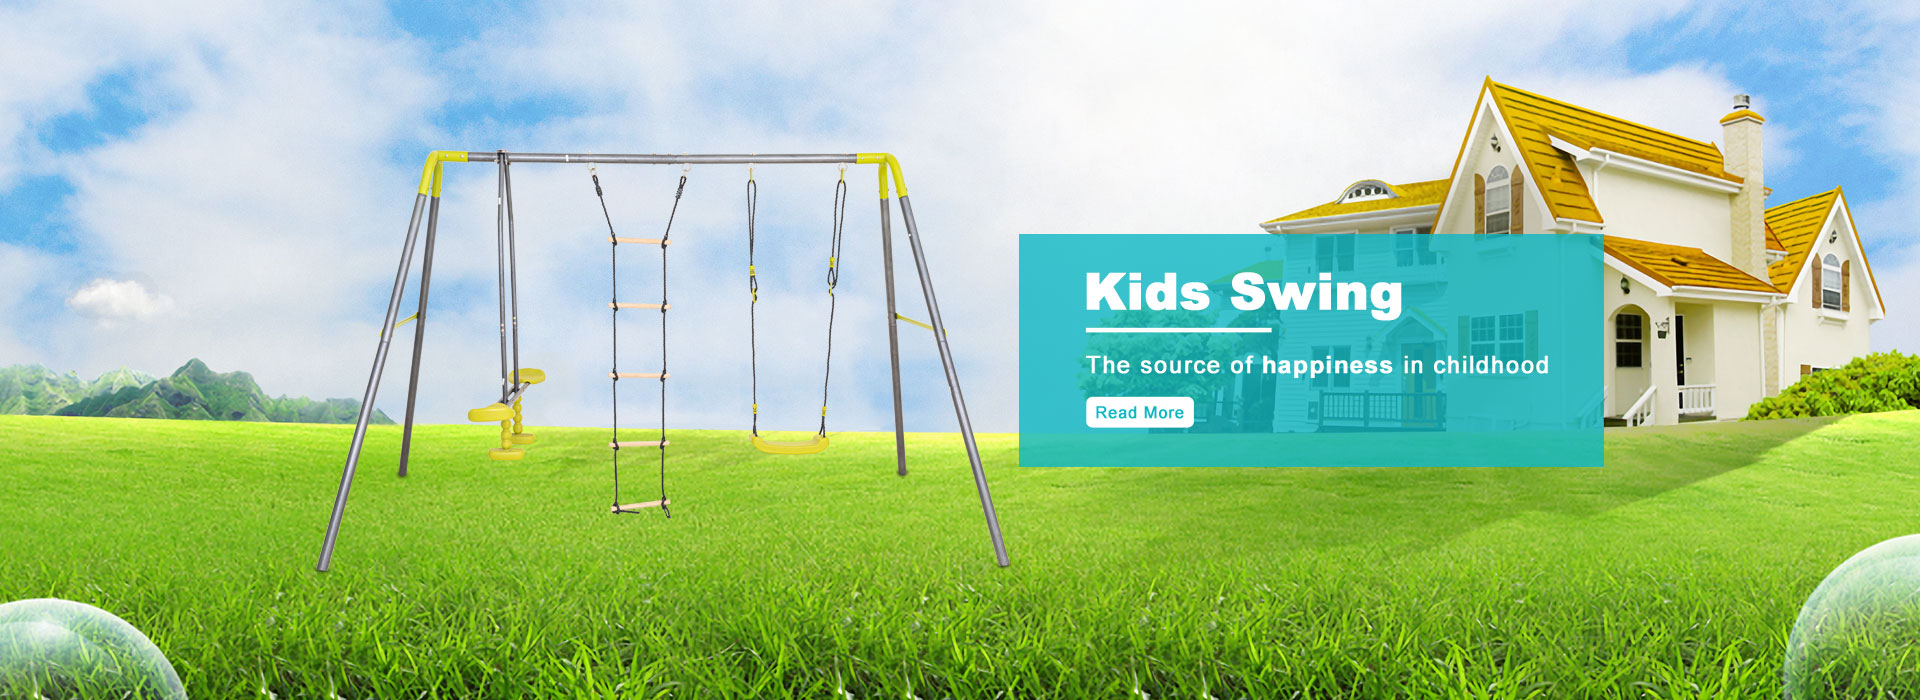 kids swing